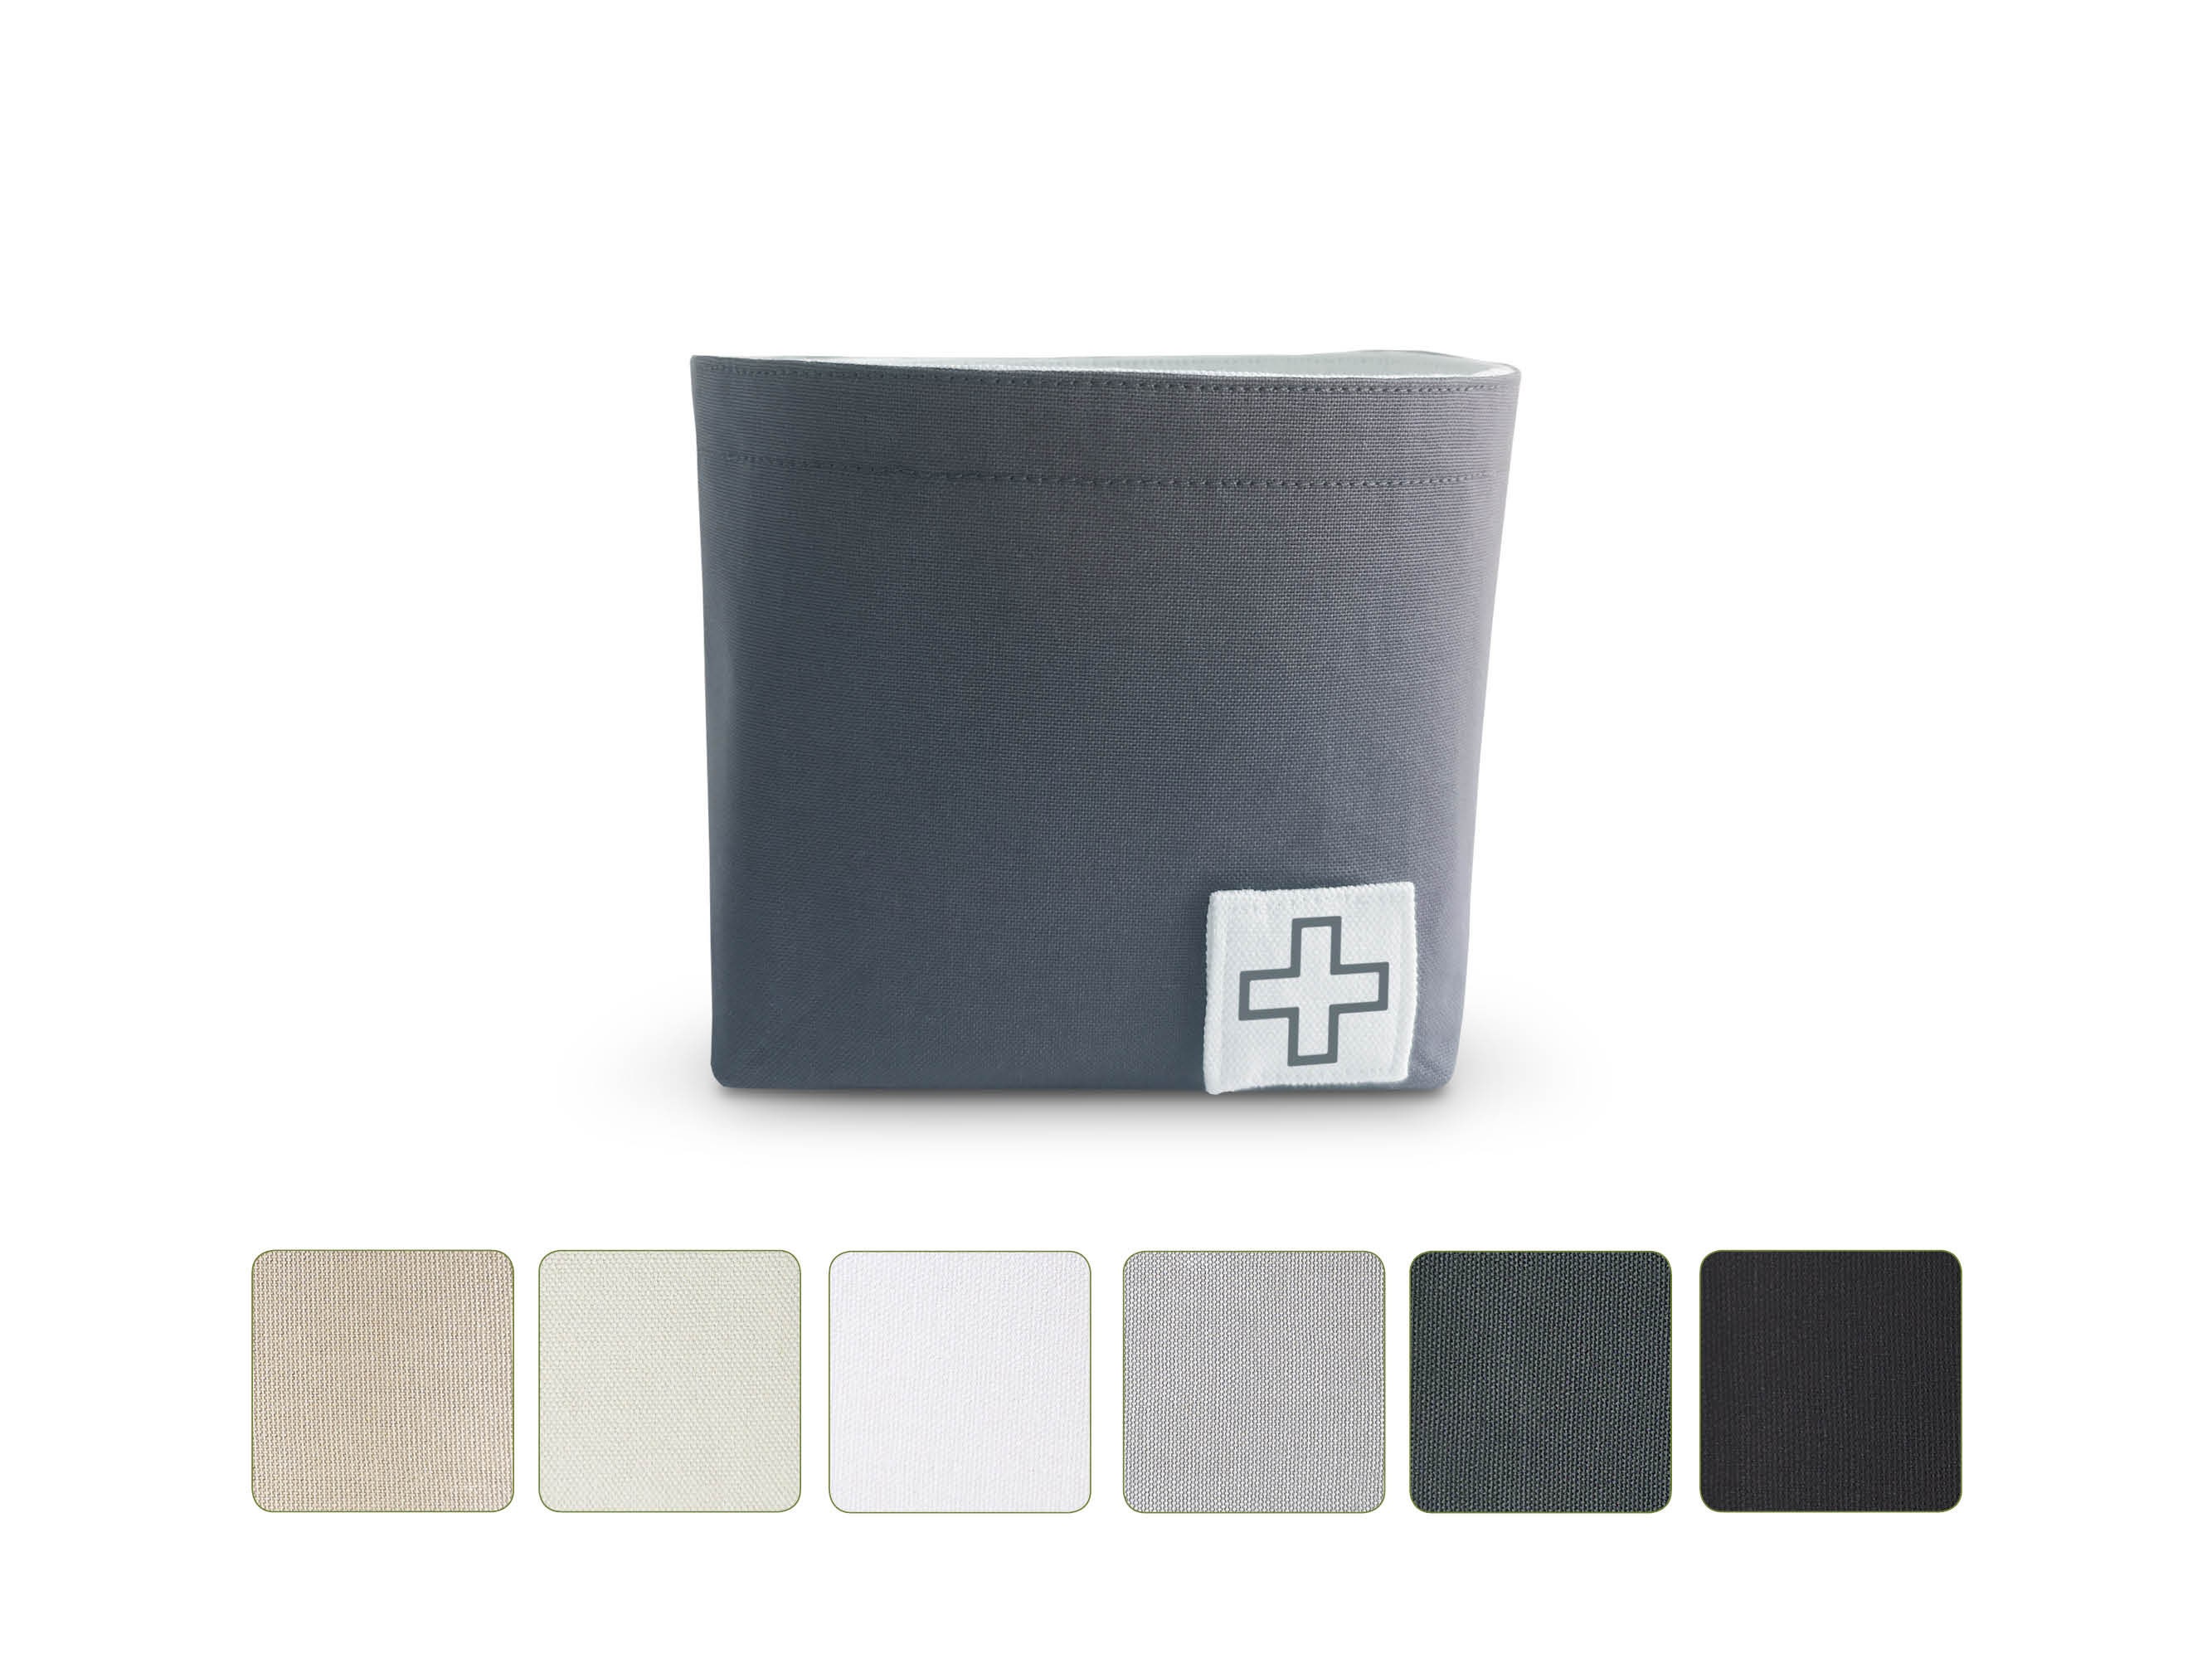 Slipeinlagen Binden Tampons Kosmetik Metalldose Box 188 x 88 x 21 mm aus  hochwertigem Metall in wunderschönen Design